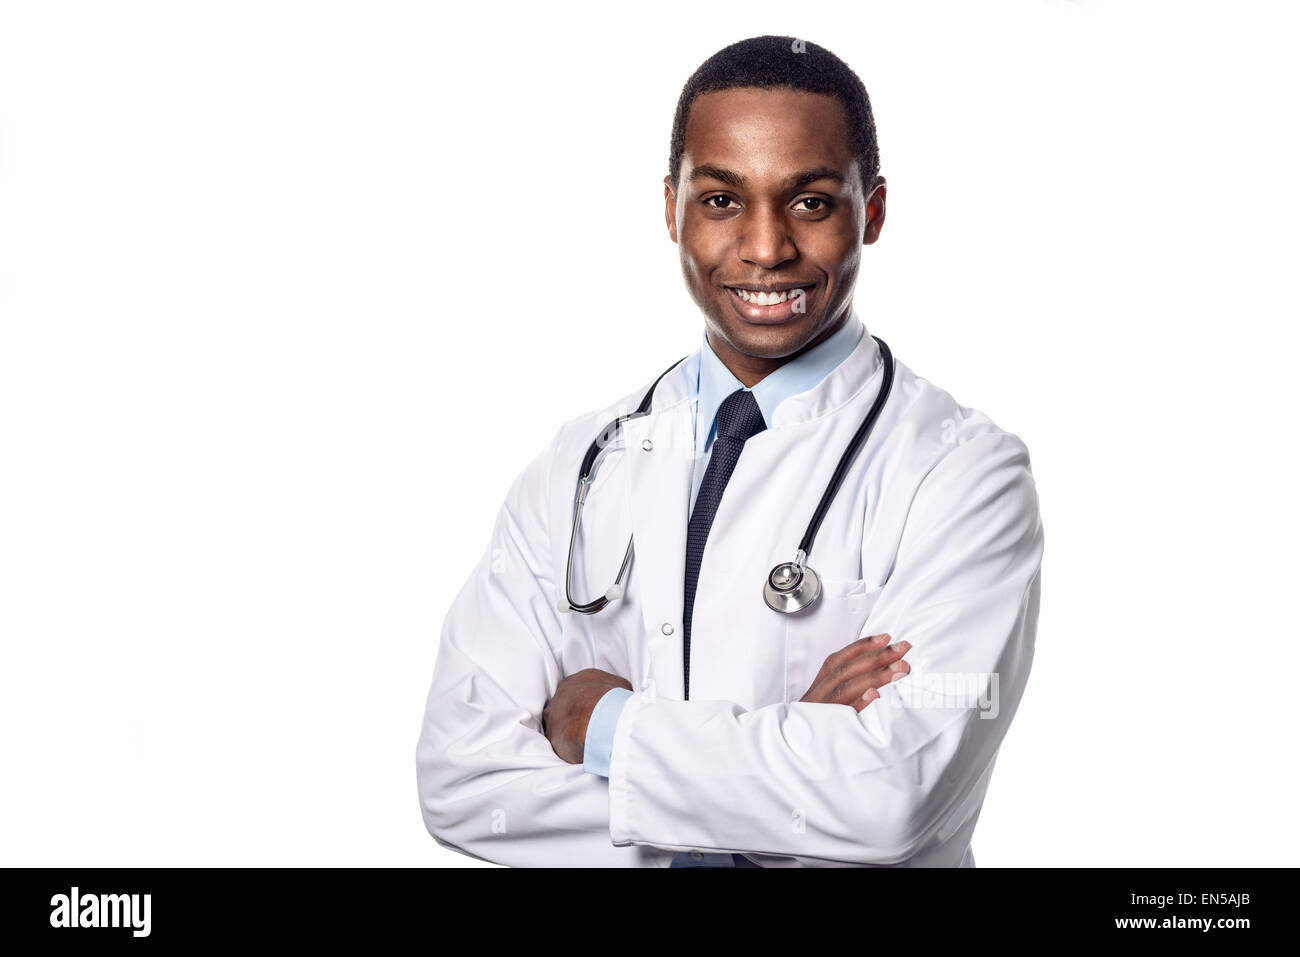 Confiant attrayant de l'Afrique de l'homme médecin vêtu d'un sarrau blanc stéthoscope et regardant la caméra avec une expression heureuse Banque D'Images